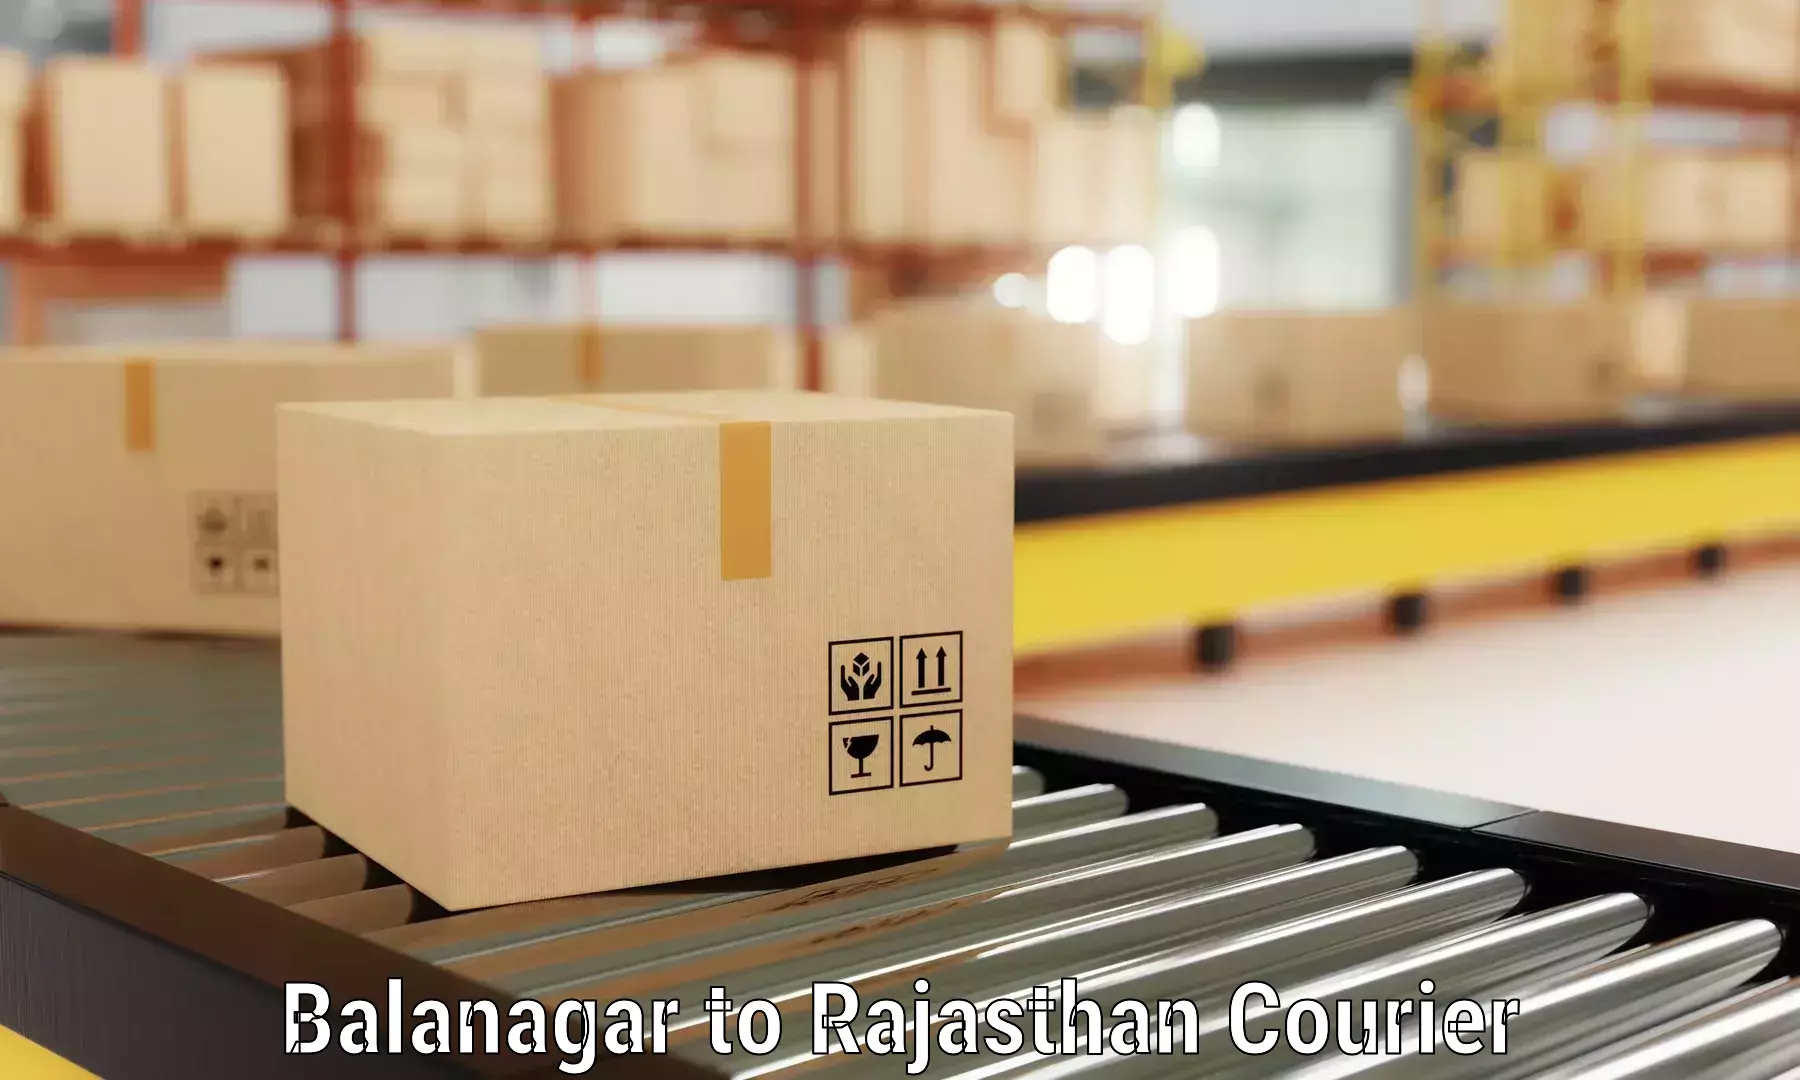 Efficient relocation services Balanagar to Bikaner